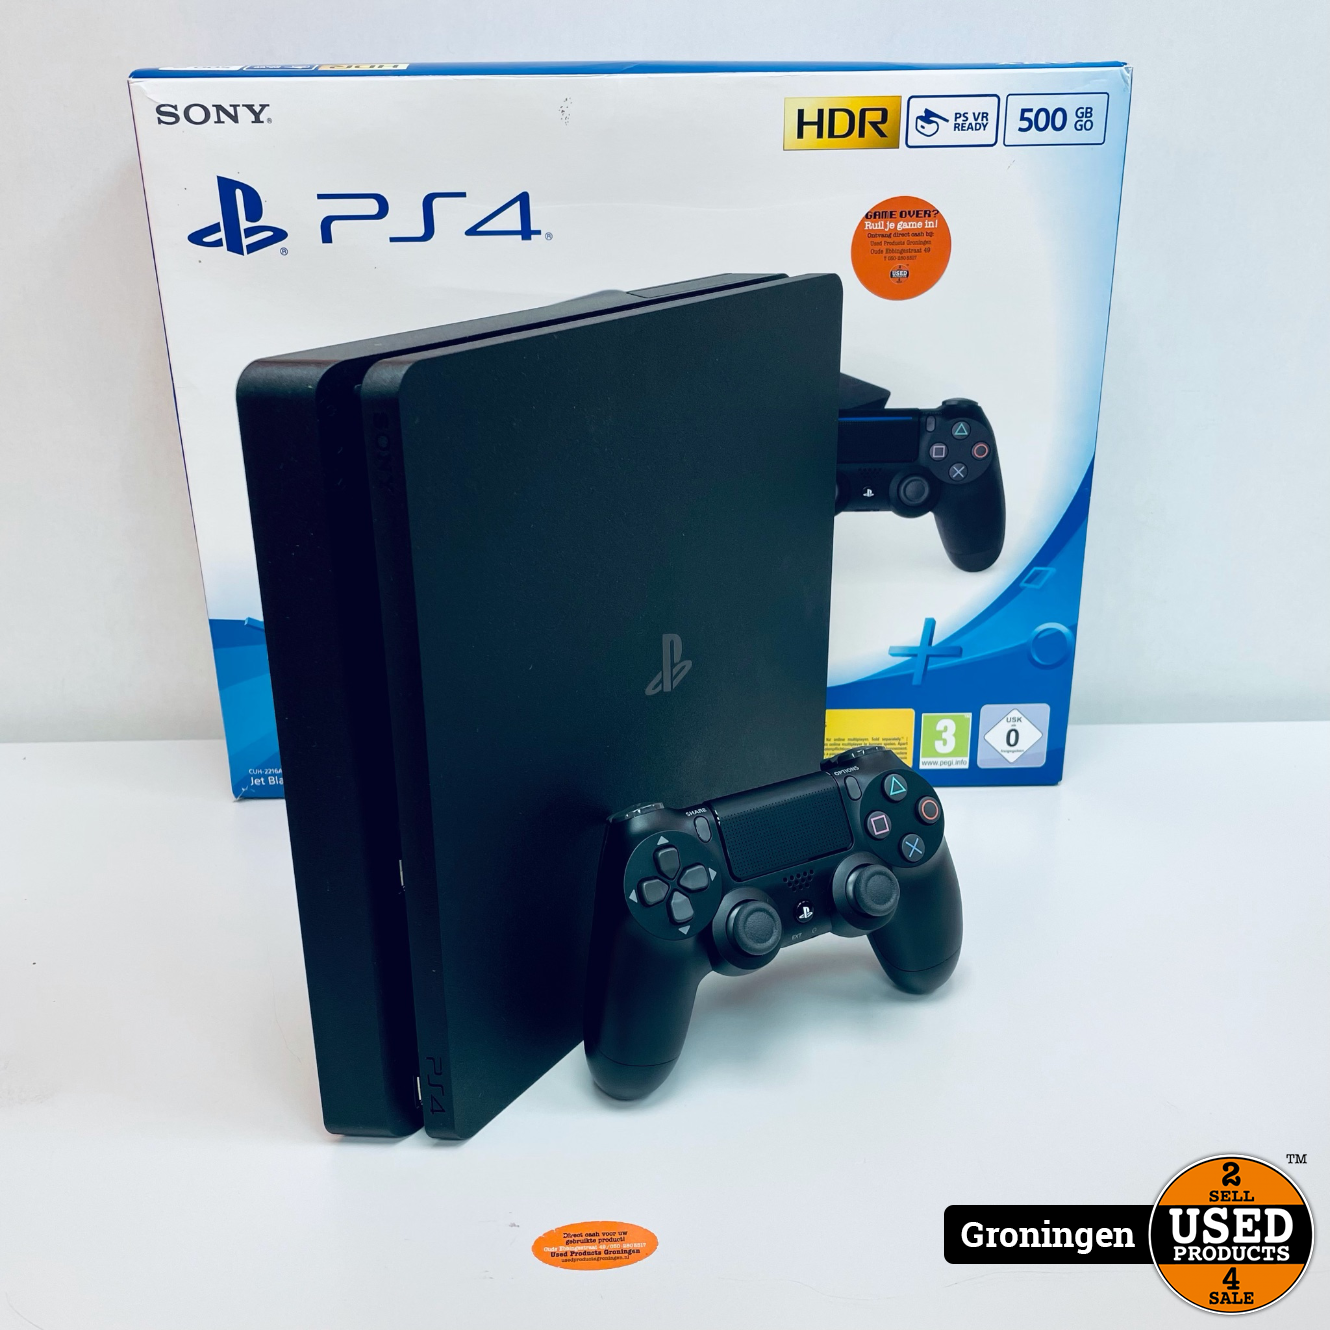 Oefening voorjaar lijn PS4] Sony PlayStation 4 Slim 500GB Zwart | incl. Controller, kabels en doos  - Used Products Groningen